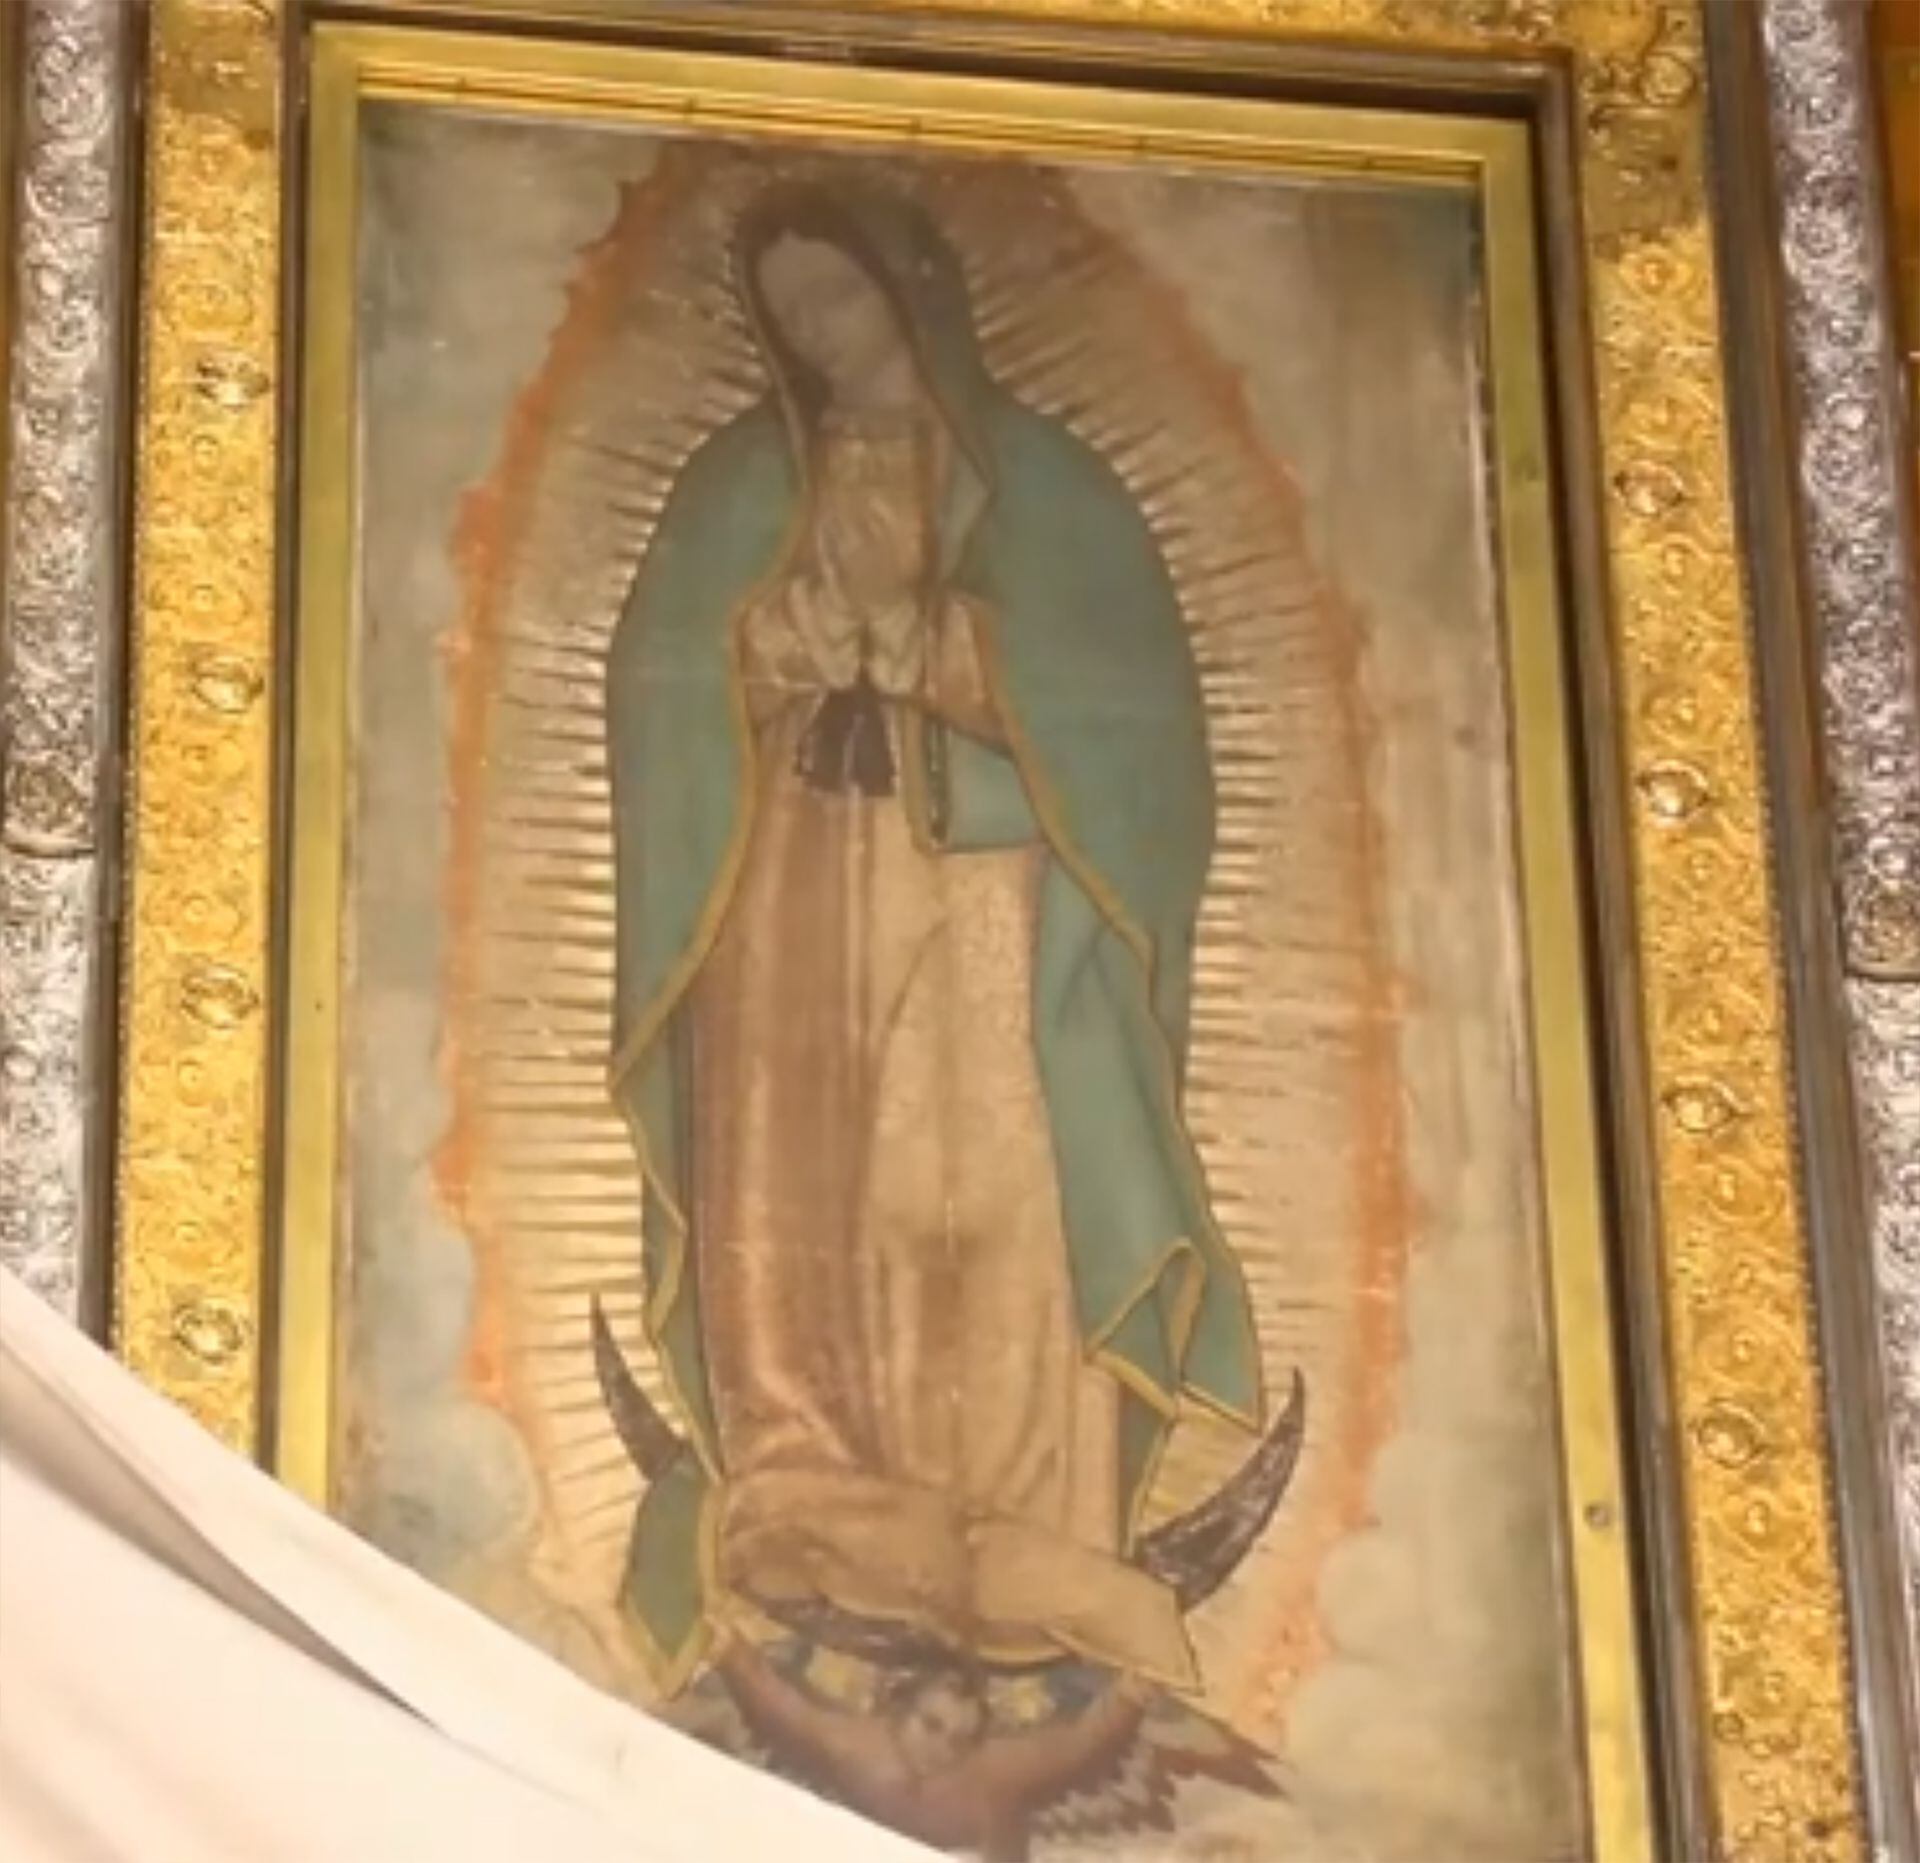 Cuadro de la Virgen de Guadalupe en la Basílica